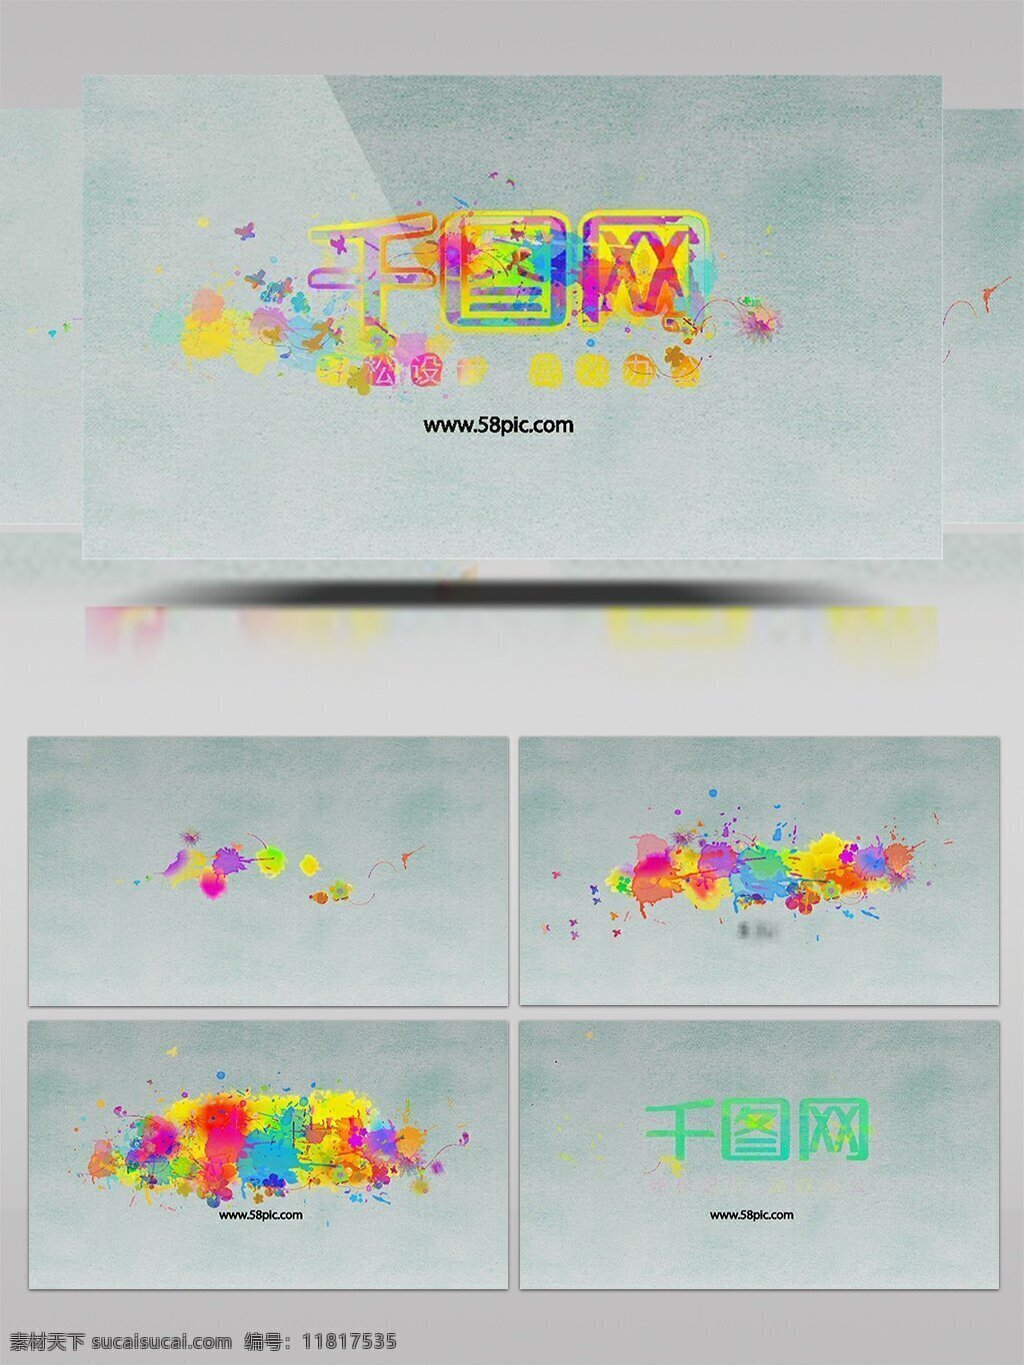 五彩 彩色 油 滴 喷 彩 ae logo 展示 模板 油漆 滴墨